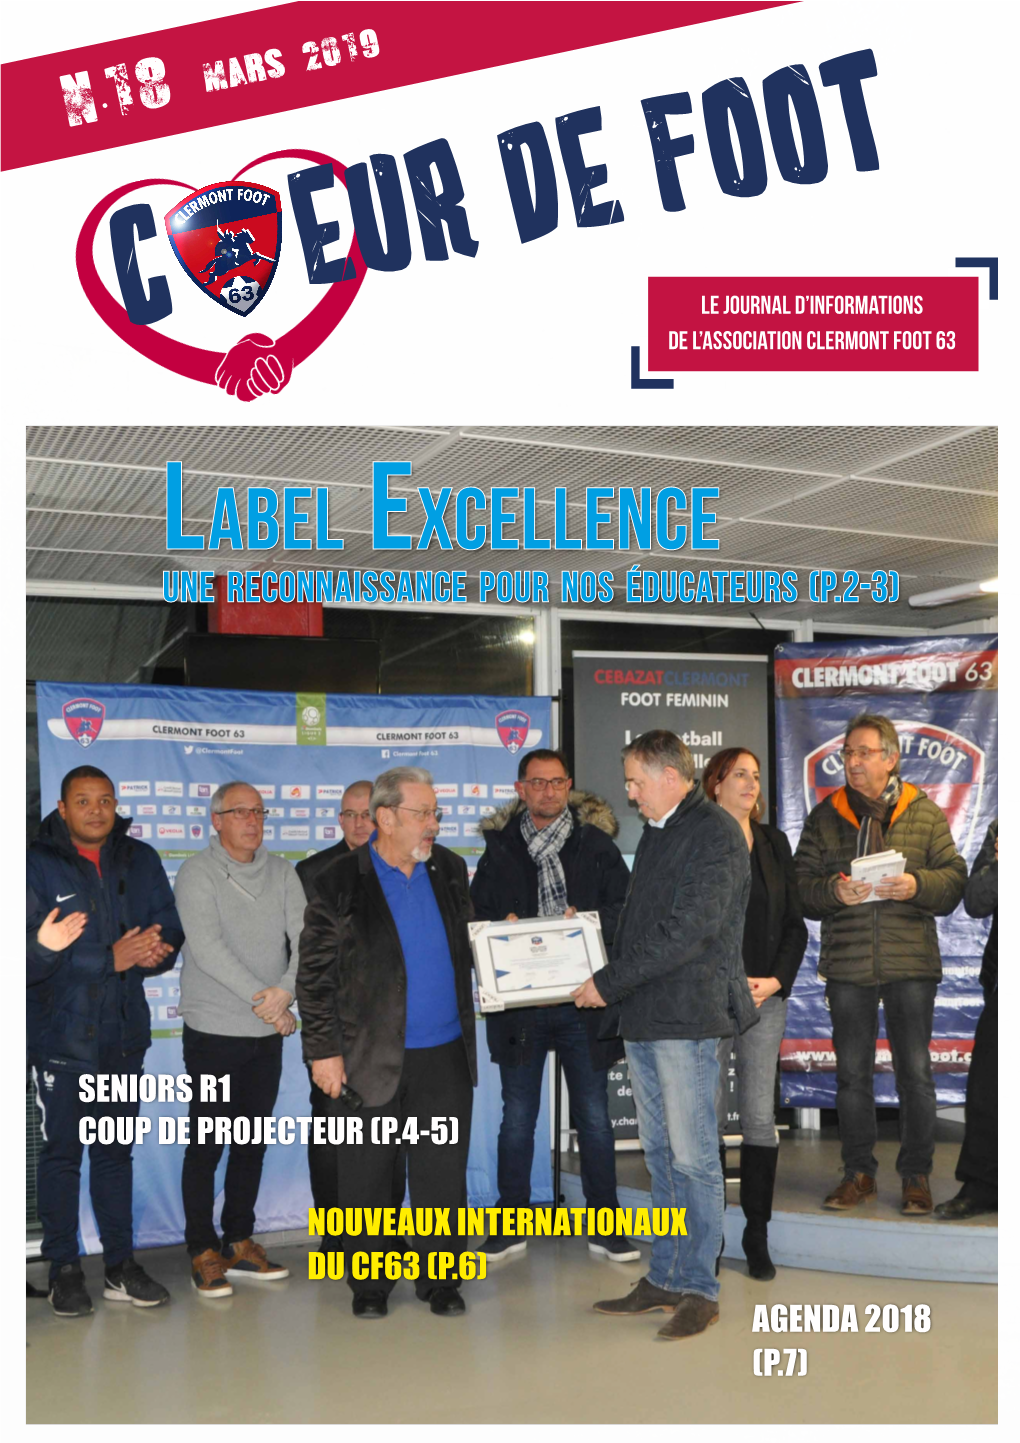 C Eur De Footle Journal D’Informations De L’Association Clermont Foot 63